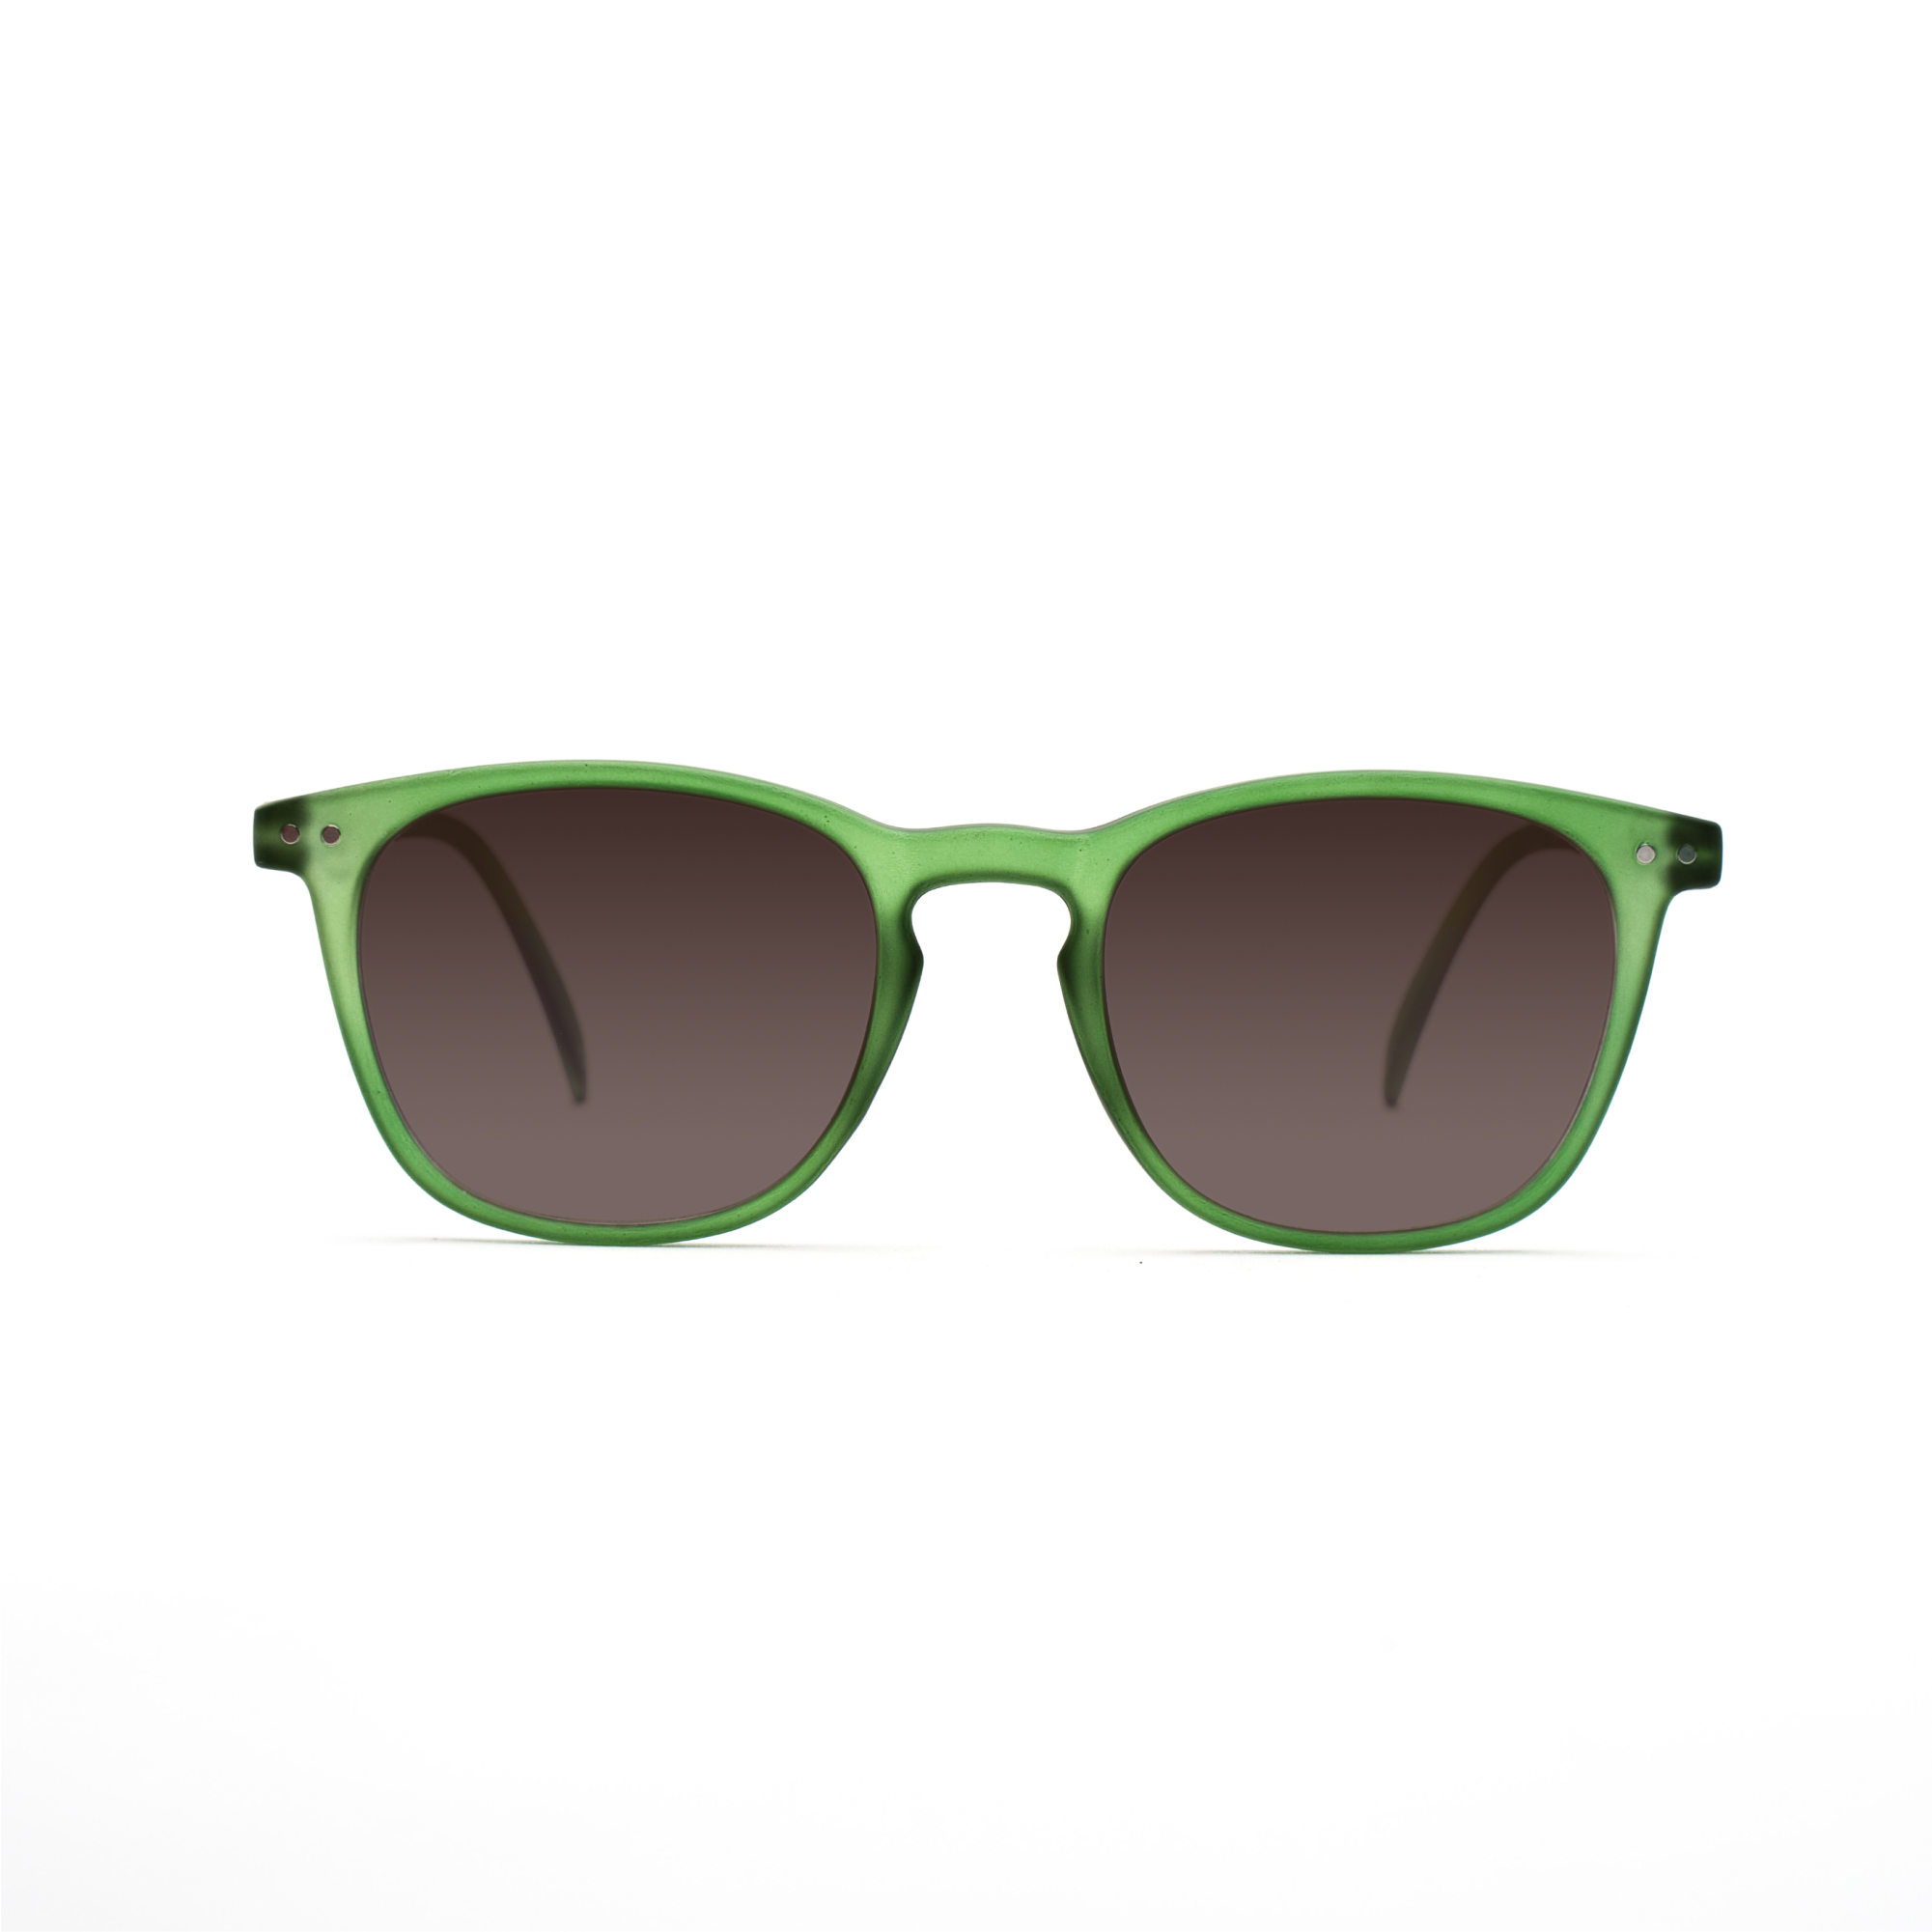 men's sunglasses – William UVSUN m - Green